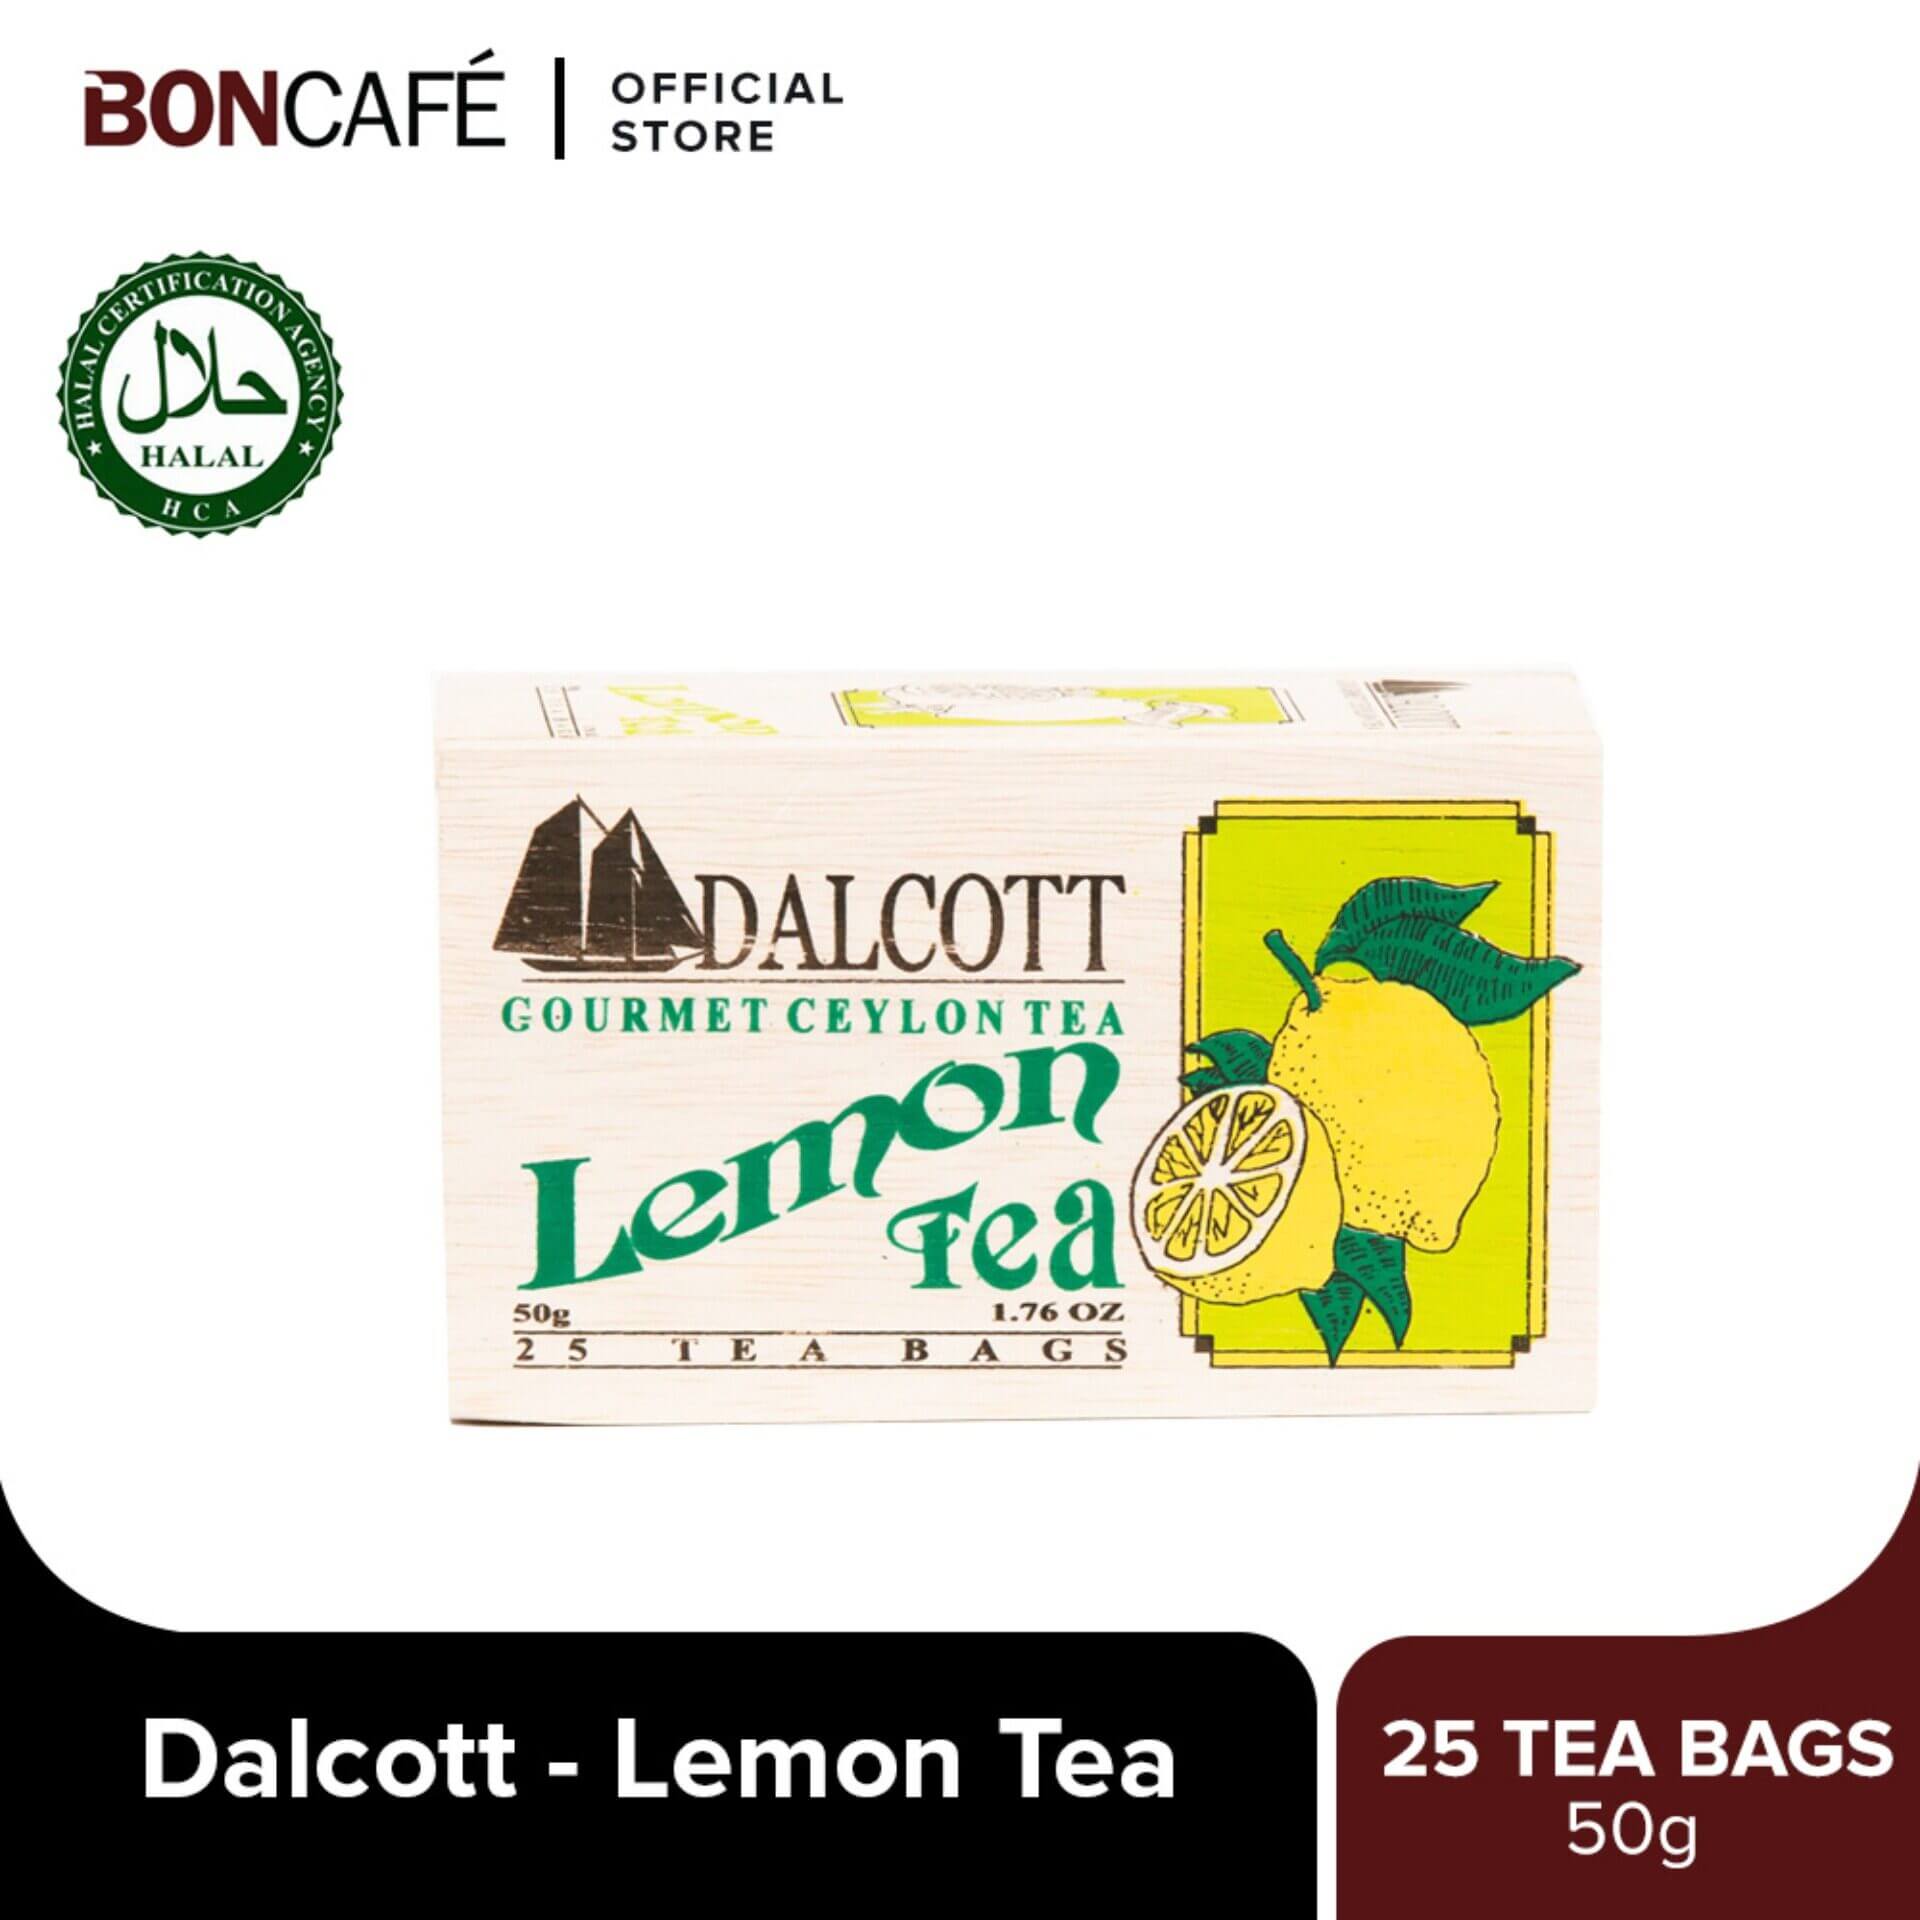 Dalcott Lemon Tea